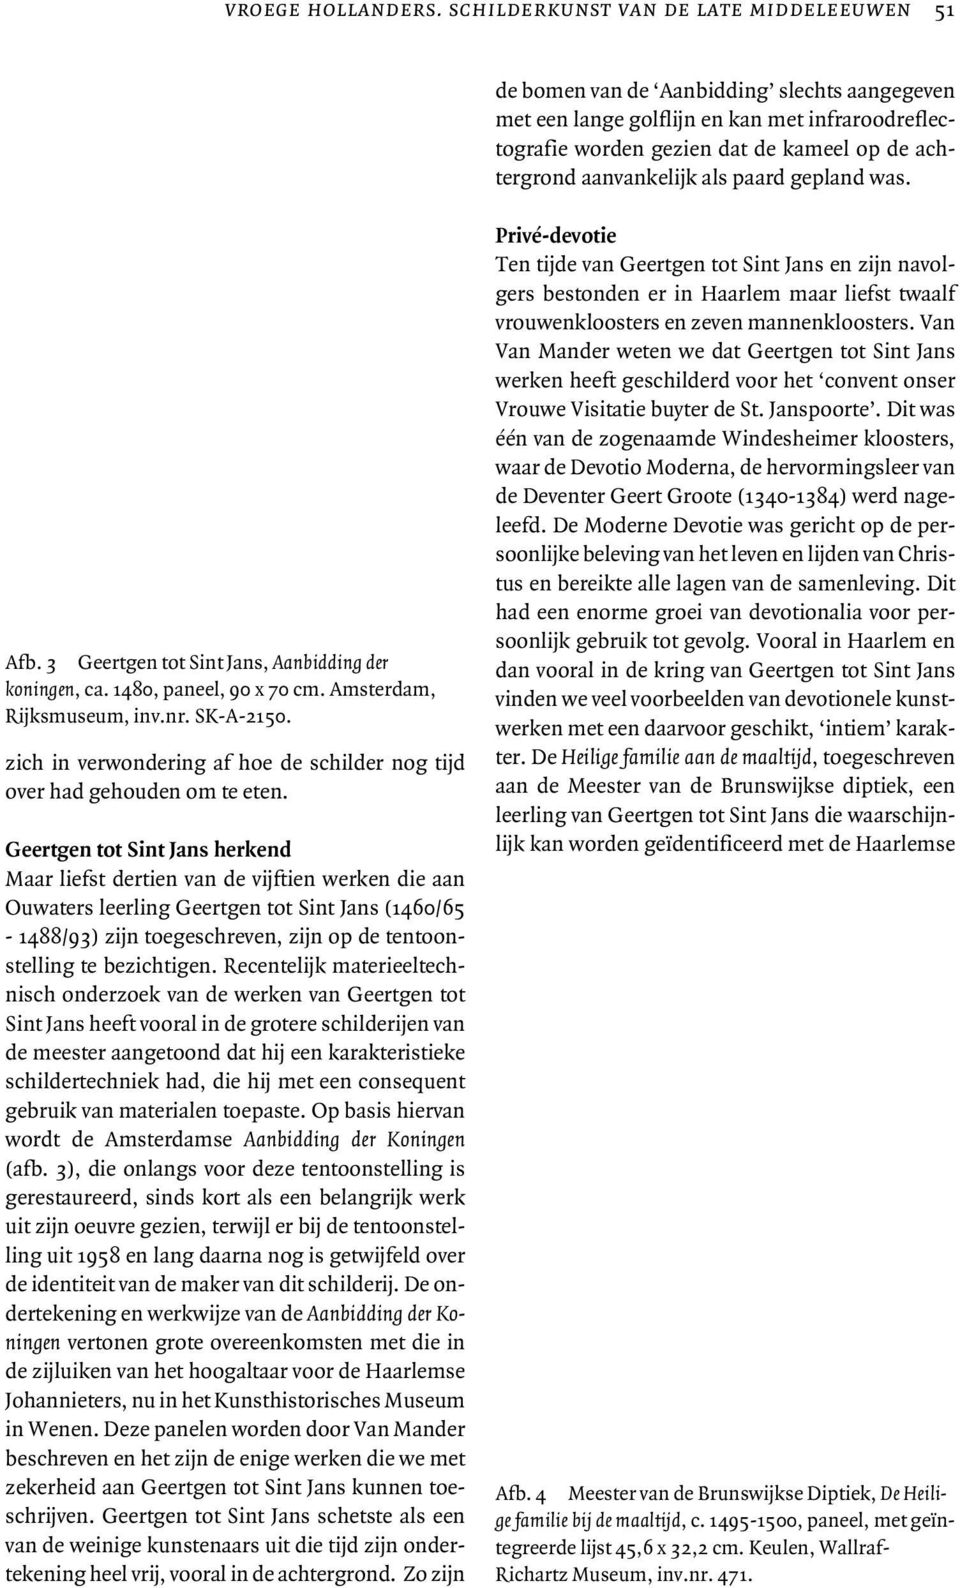 aanvankelijk als paard gepland was. Afb. 3 Geertgen tot Sint Jans, Aanbidding der koningen, ca. 1480, paneel, 90 x 70 cm. Amsterdam, Rijksmuseum, inv.nr. SK-A-2150.